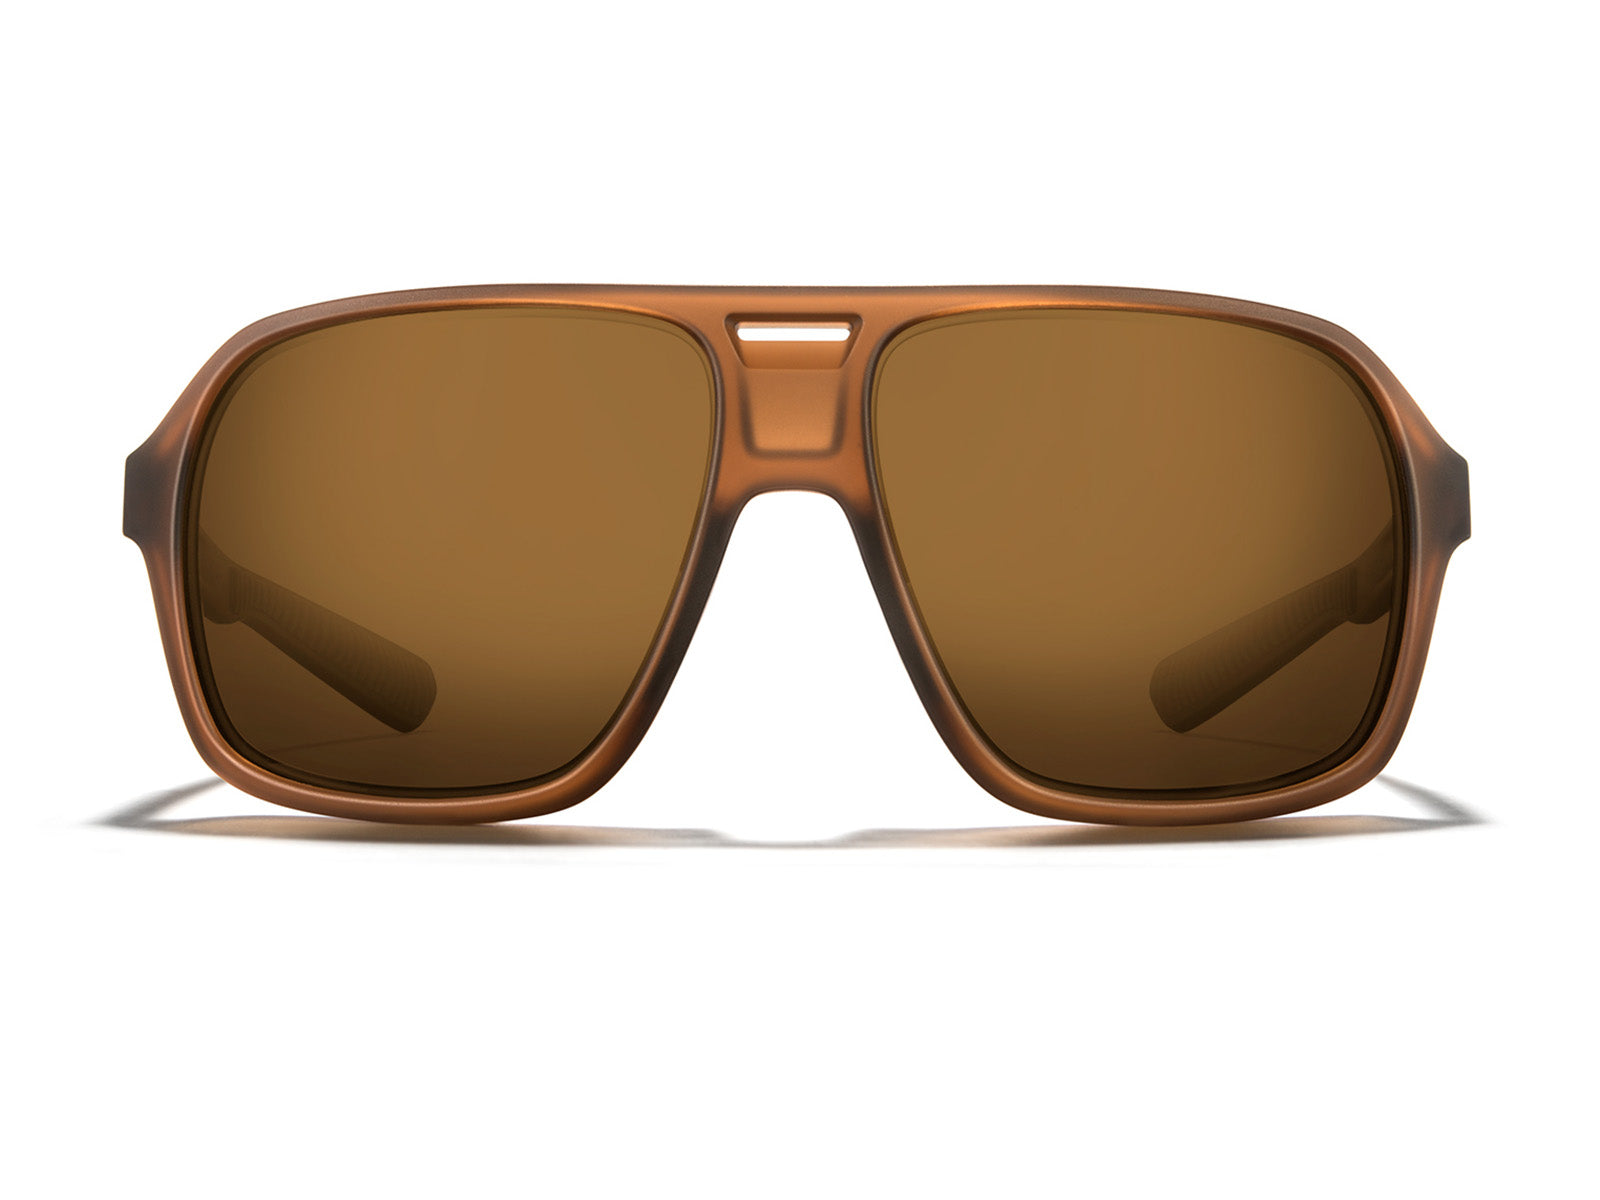 Torino Sunglasses - Retro Race-Inspired Sunglasses